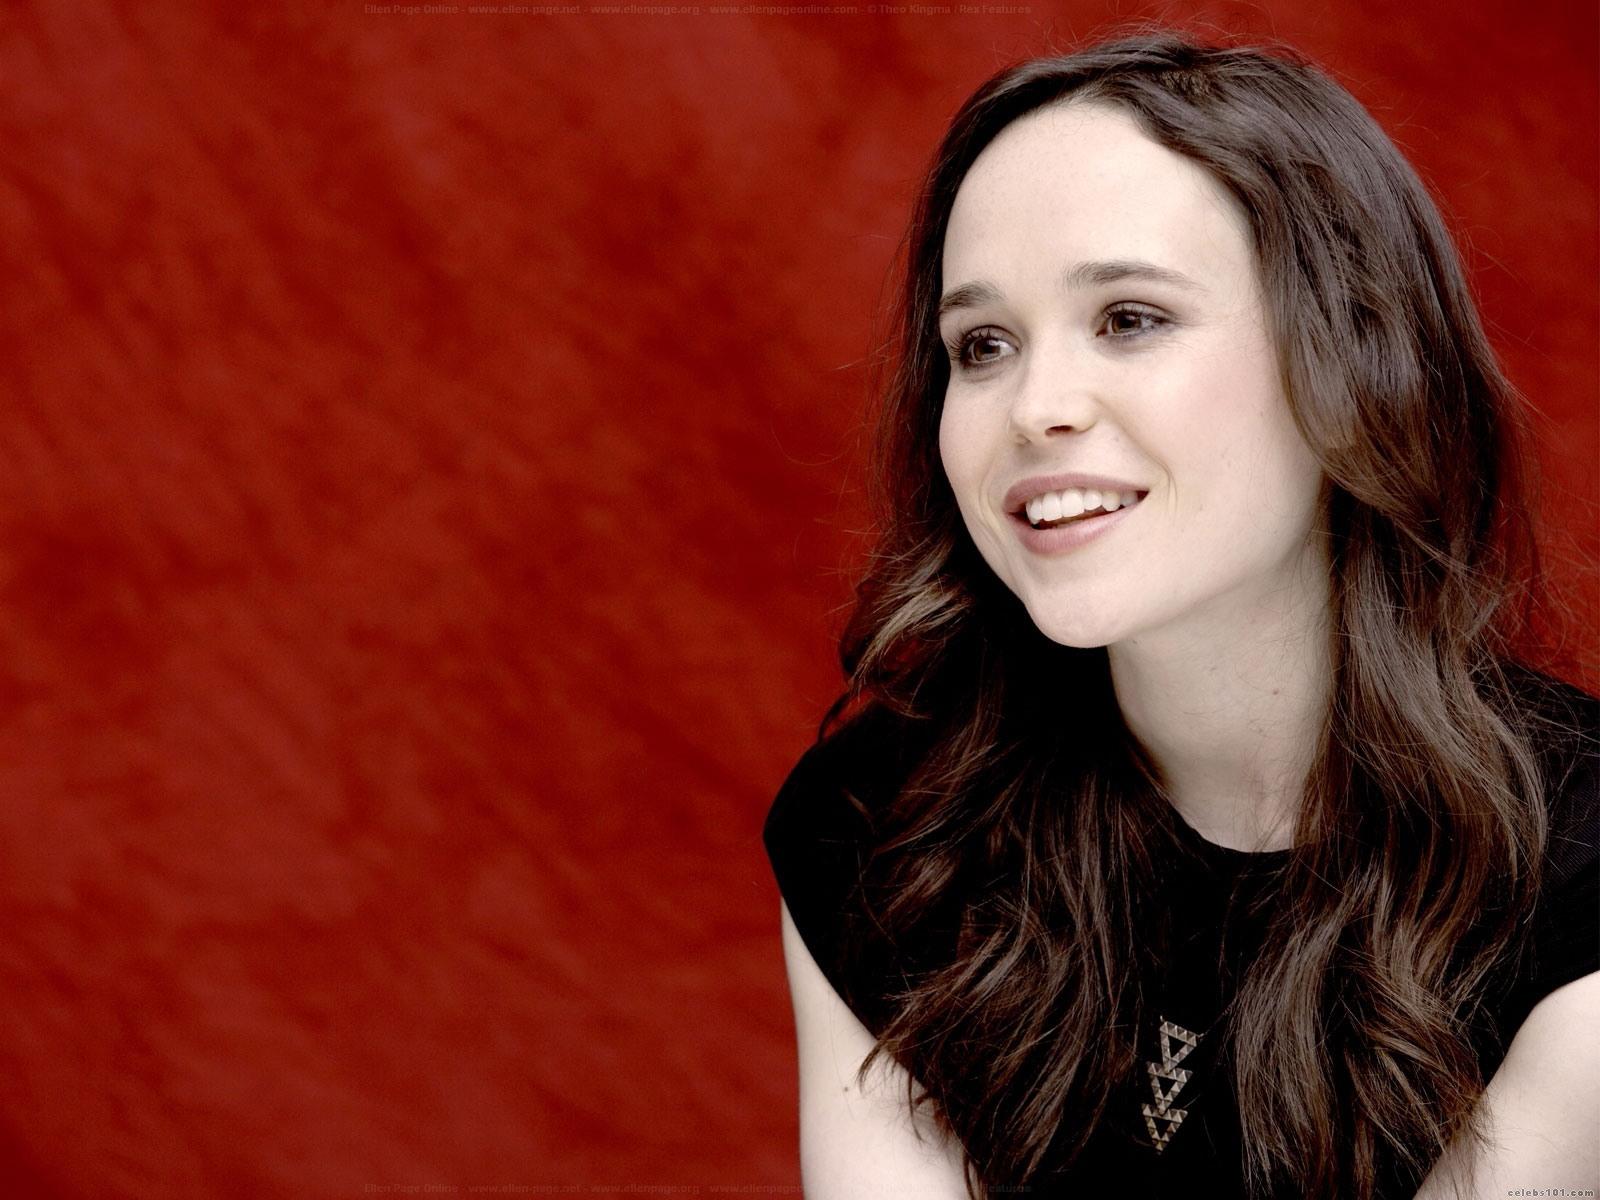 Ellen_Page_Wallpaper.jpg